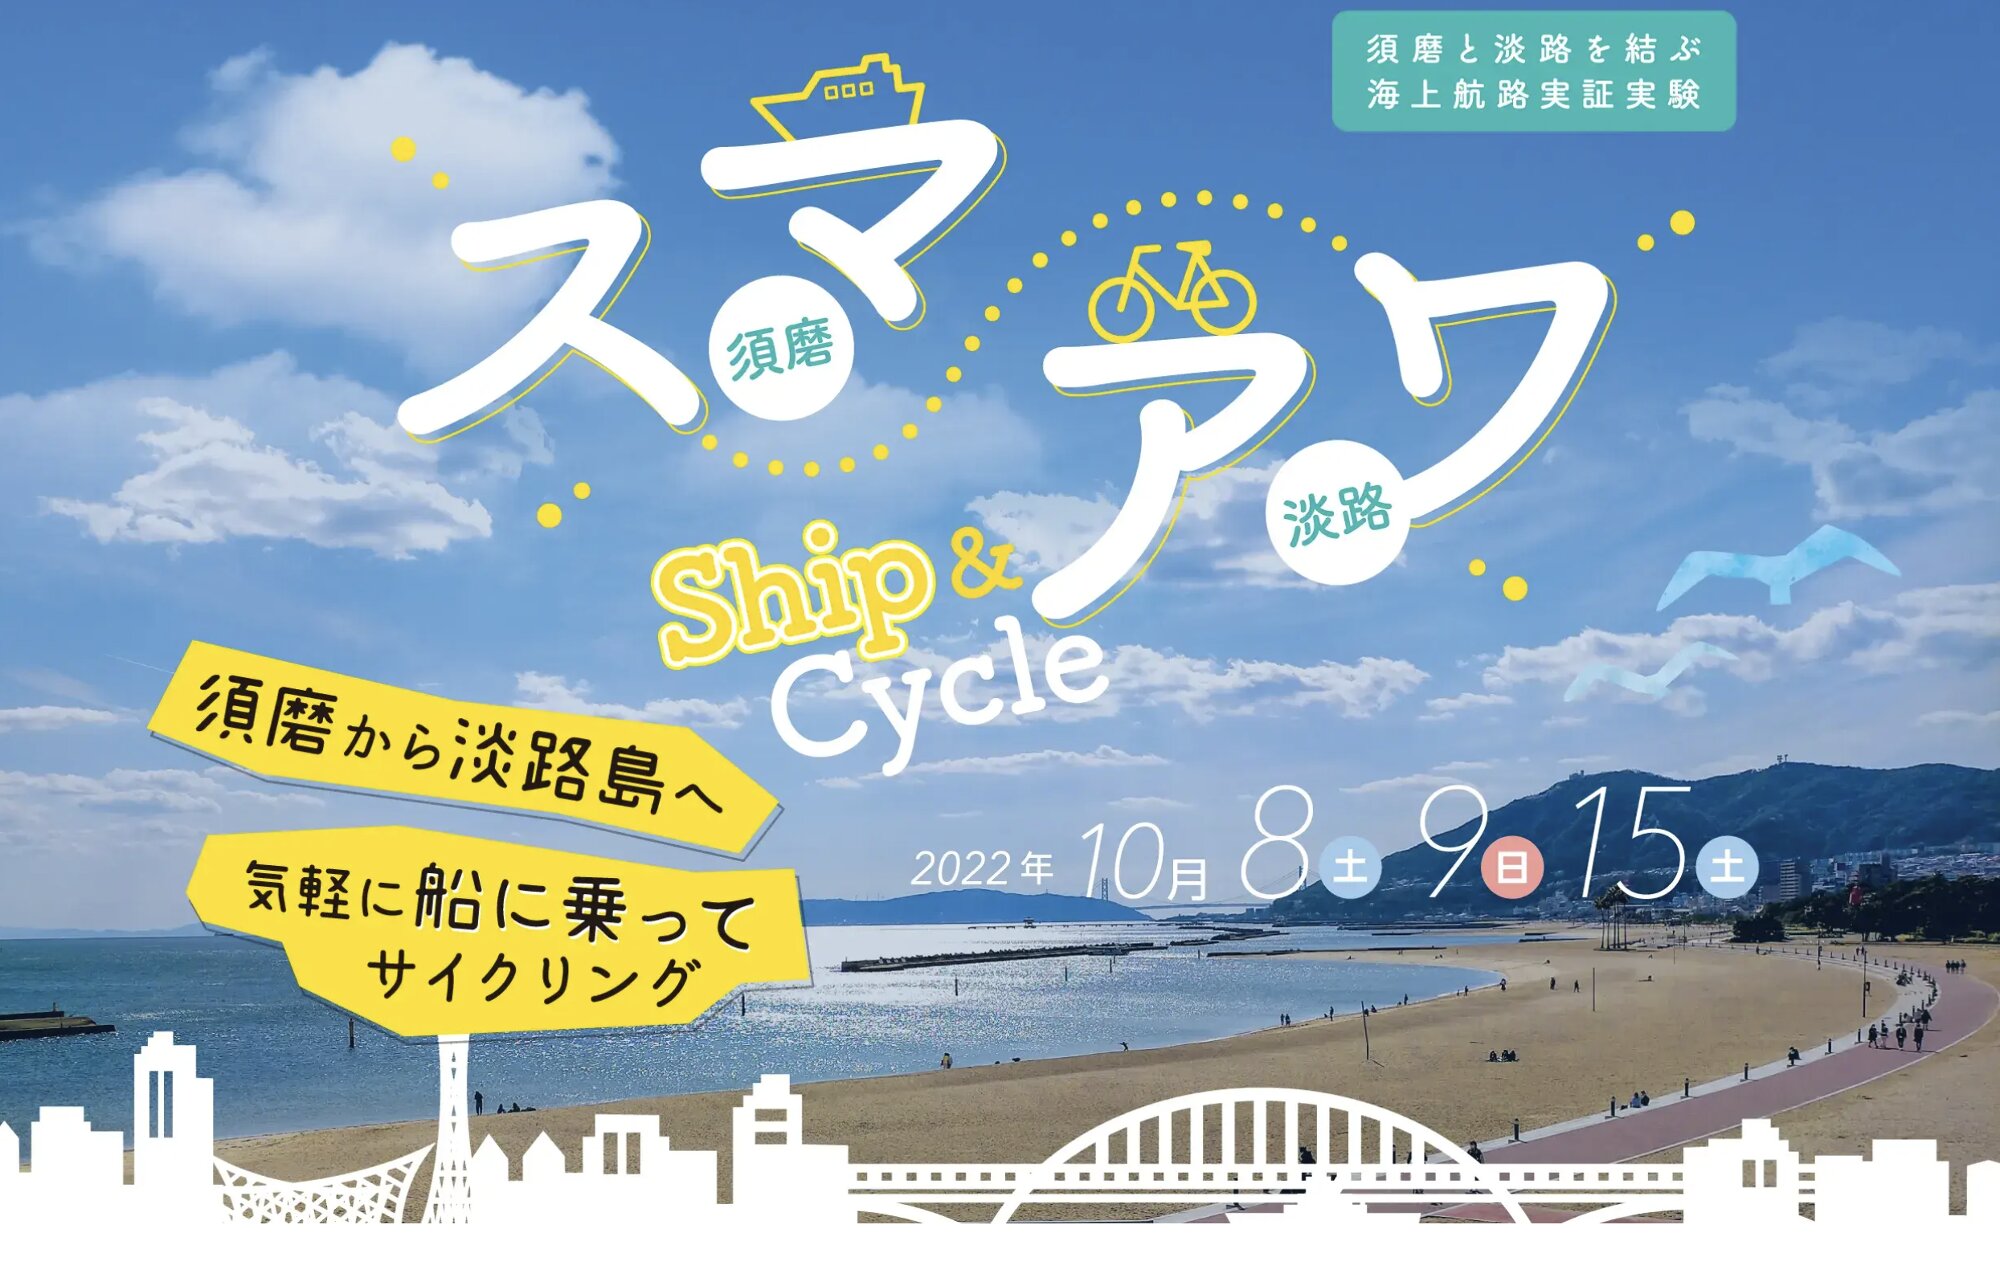 出典：スマ・アワ Ship & Cycle